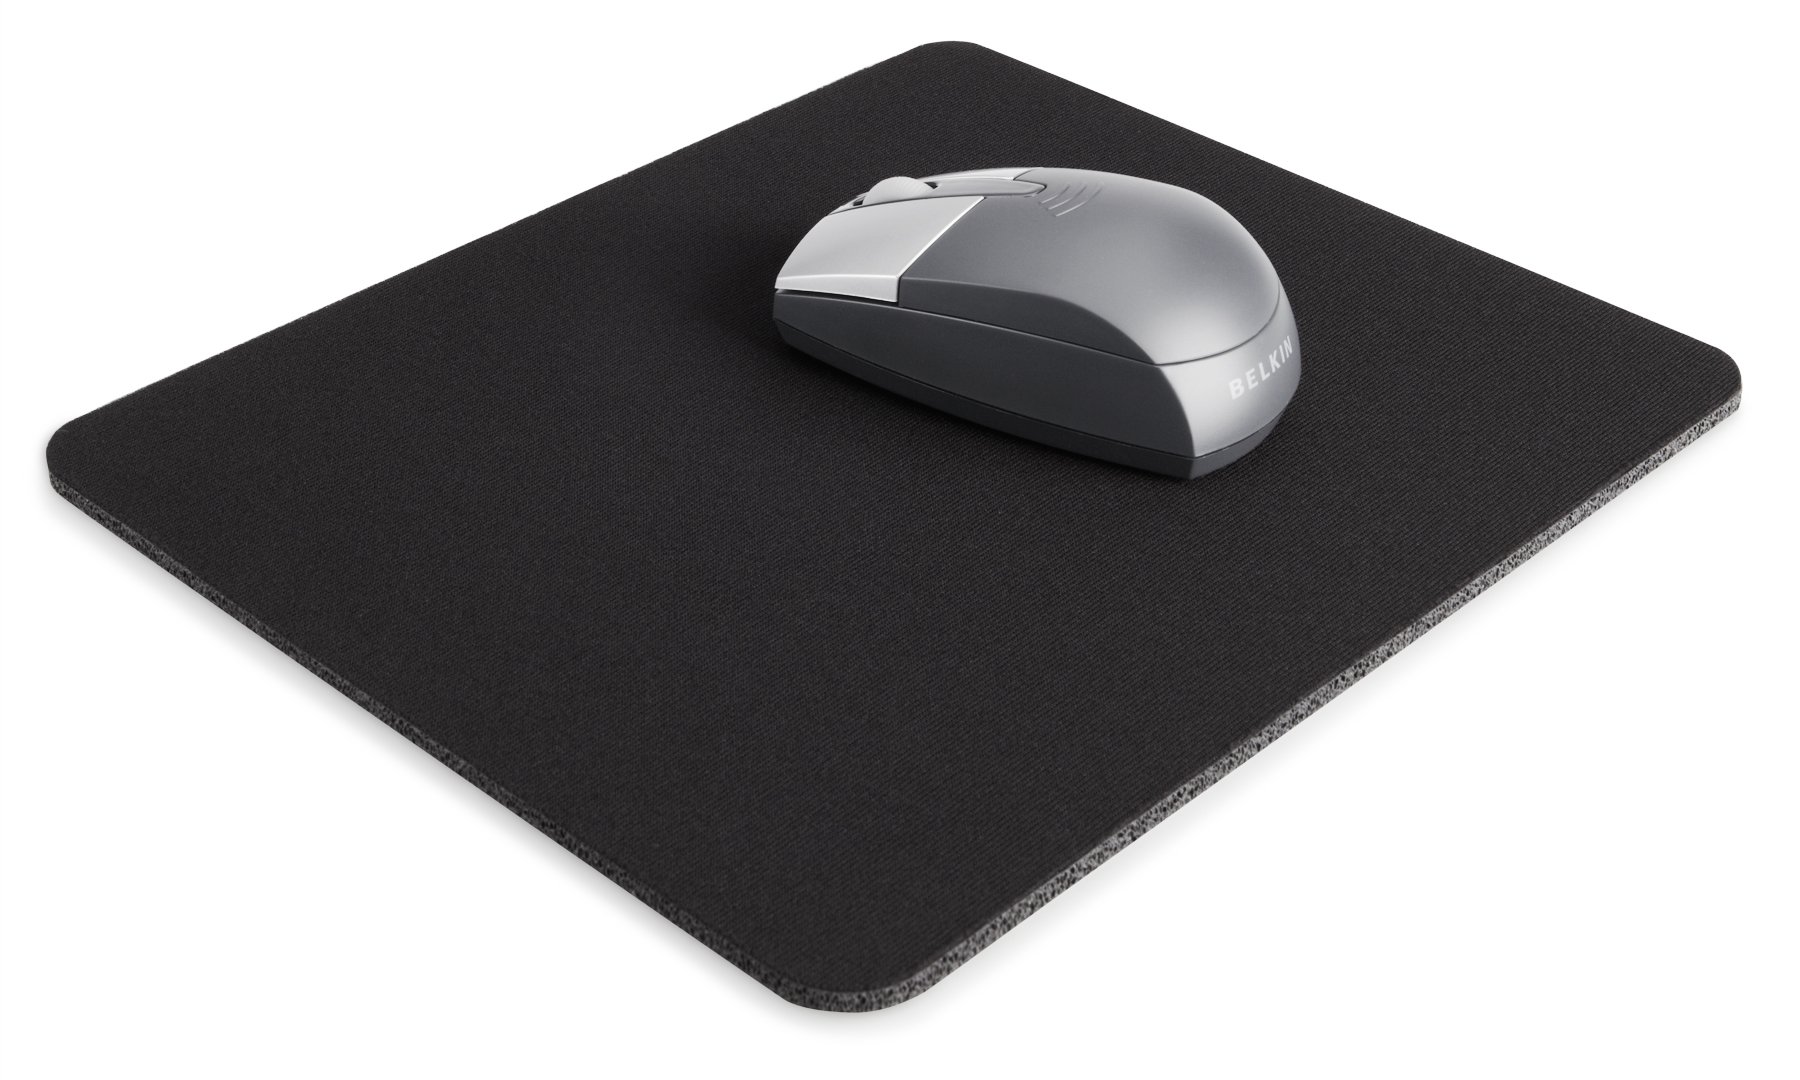 brand new non-slip neoprene based mouse pad & coaster 